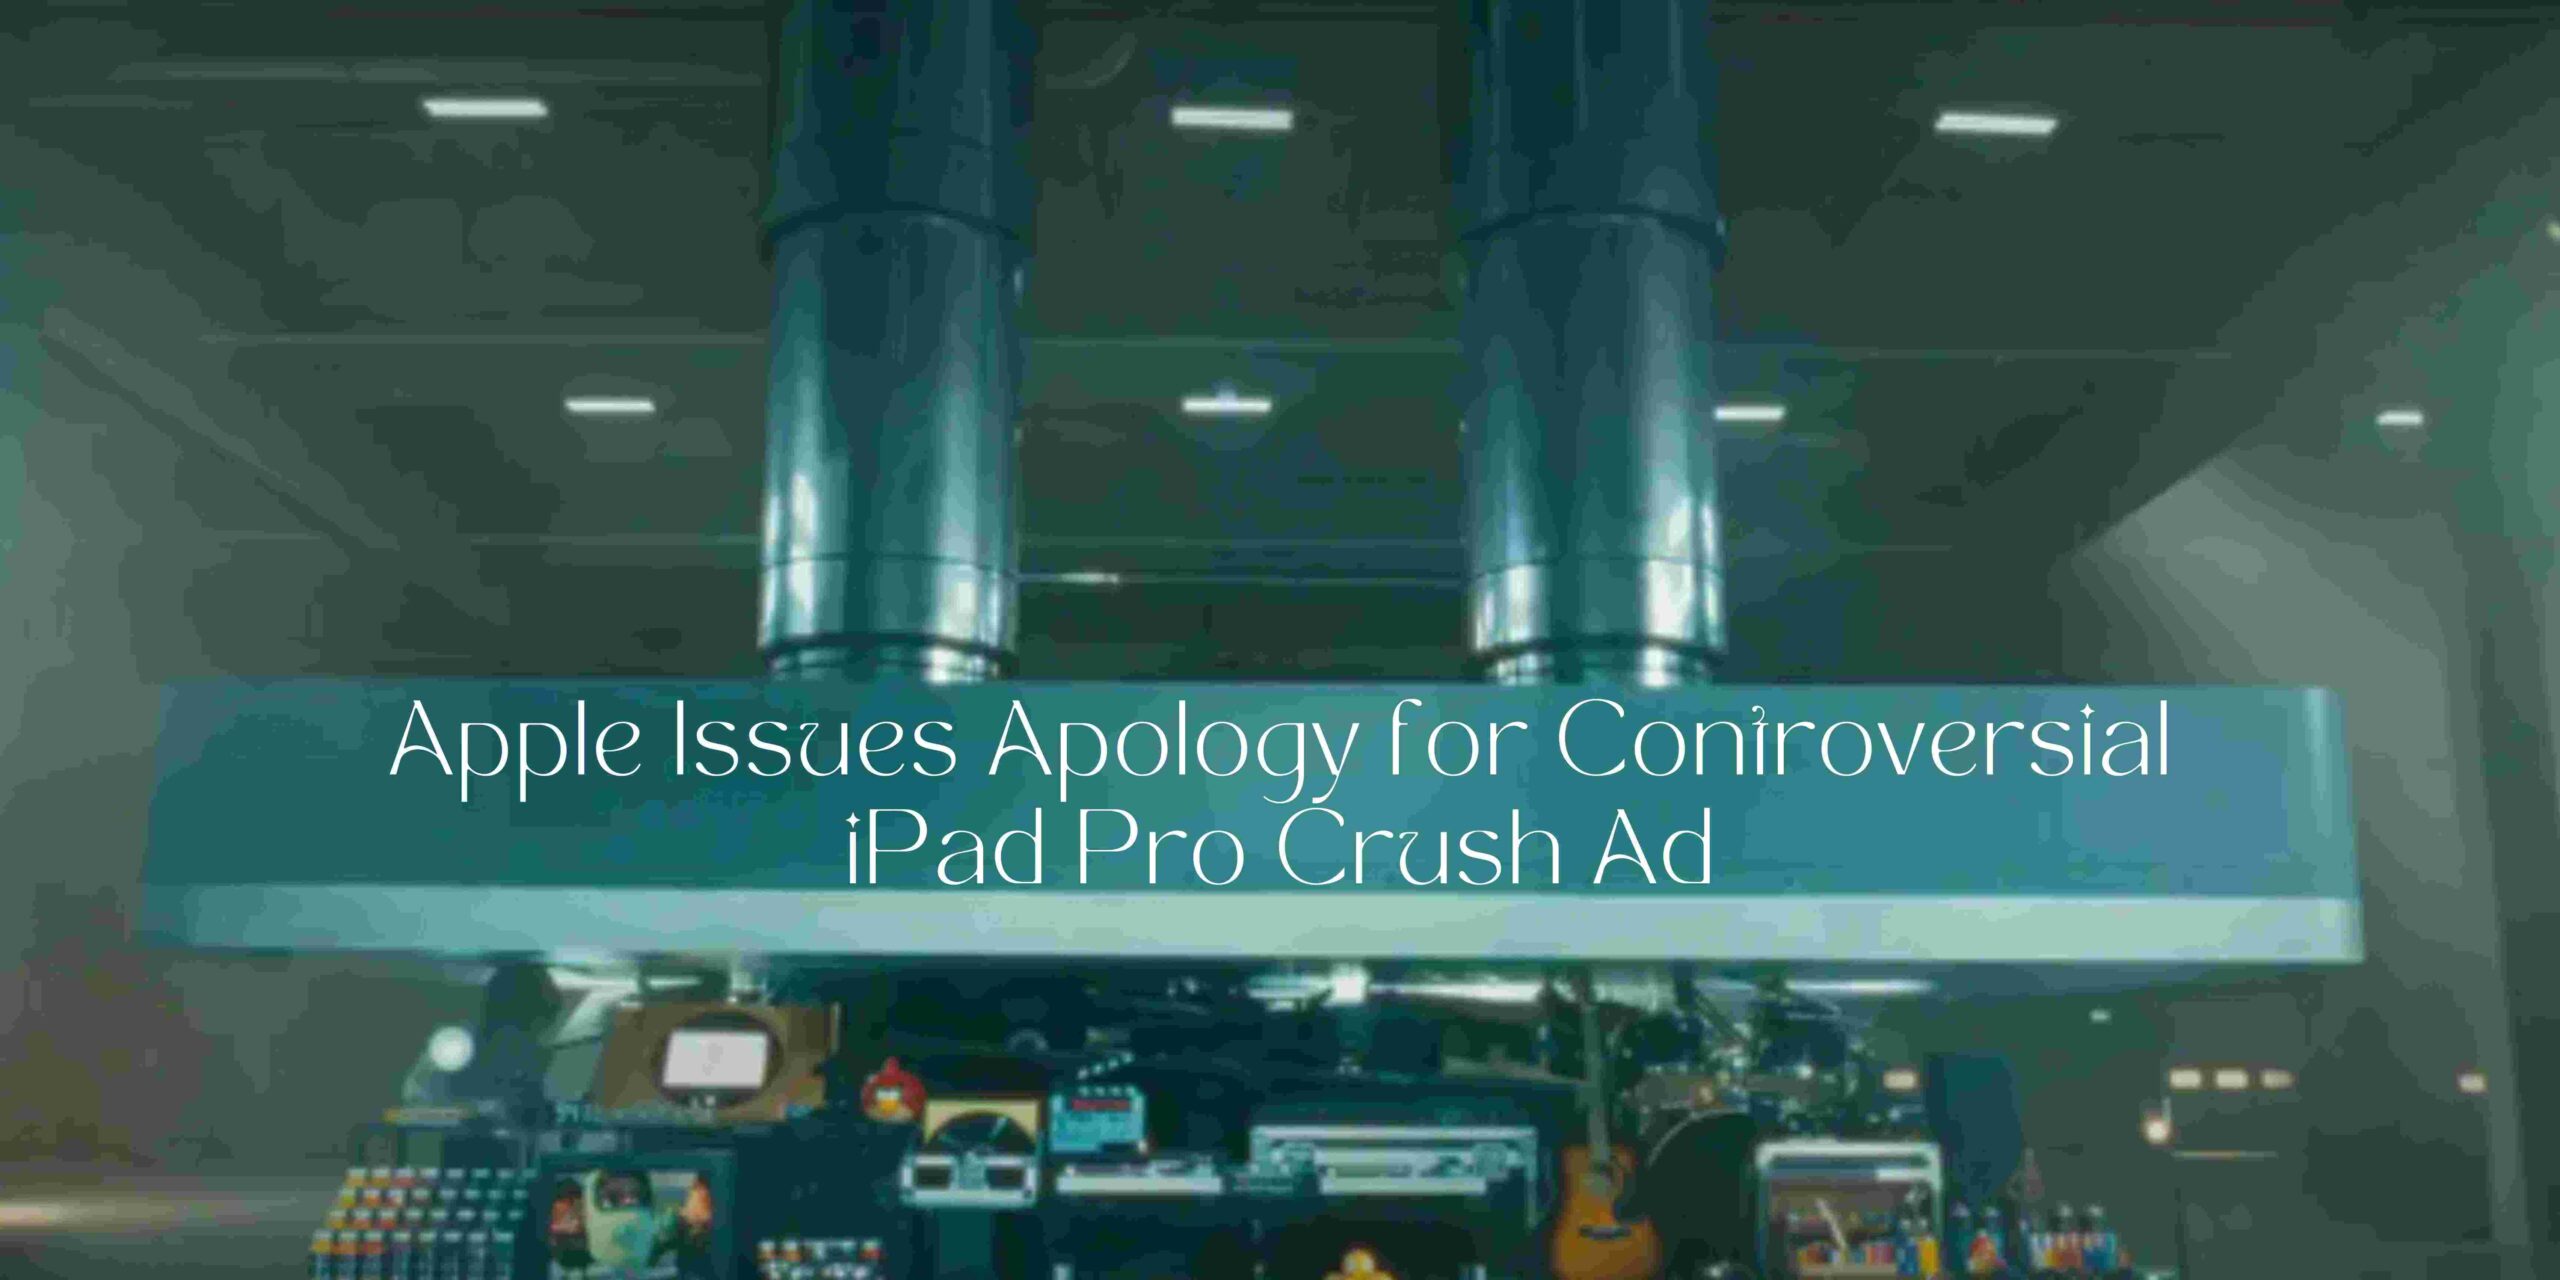 iPad Pro crush ad